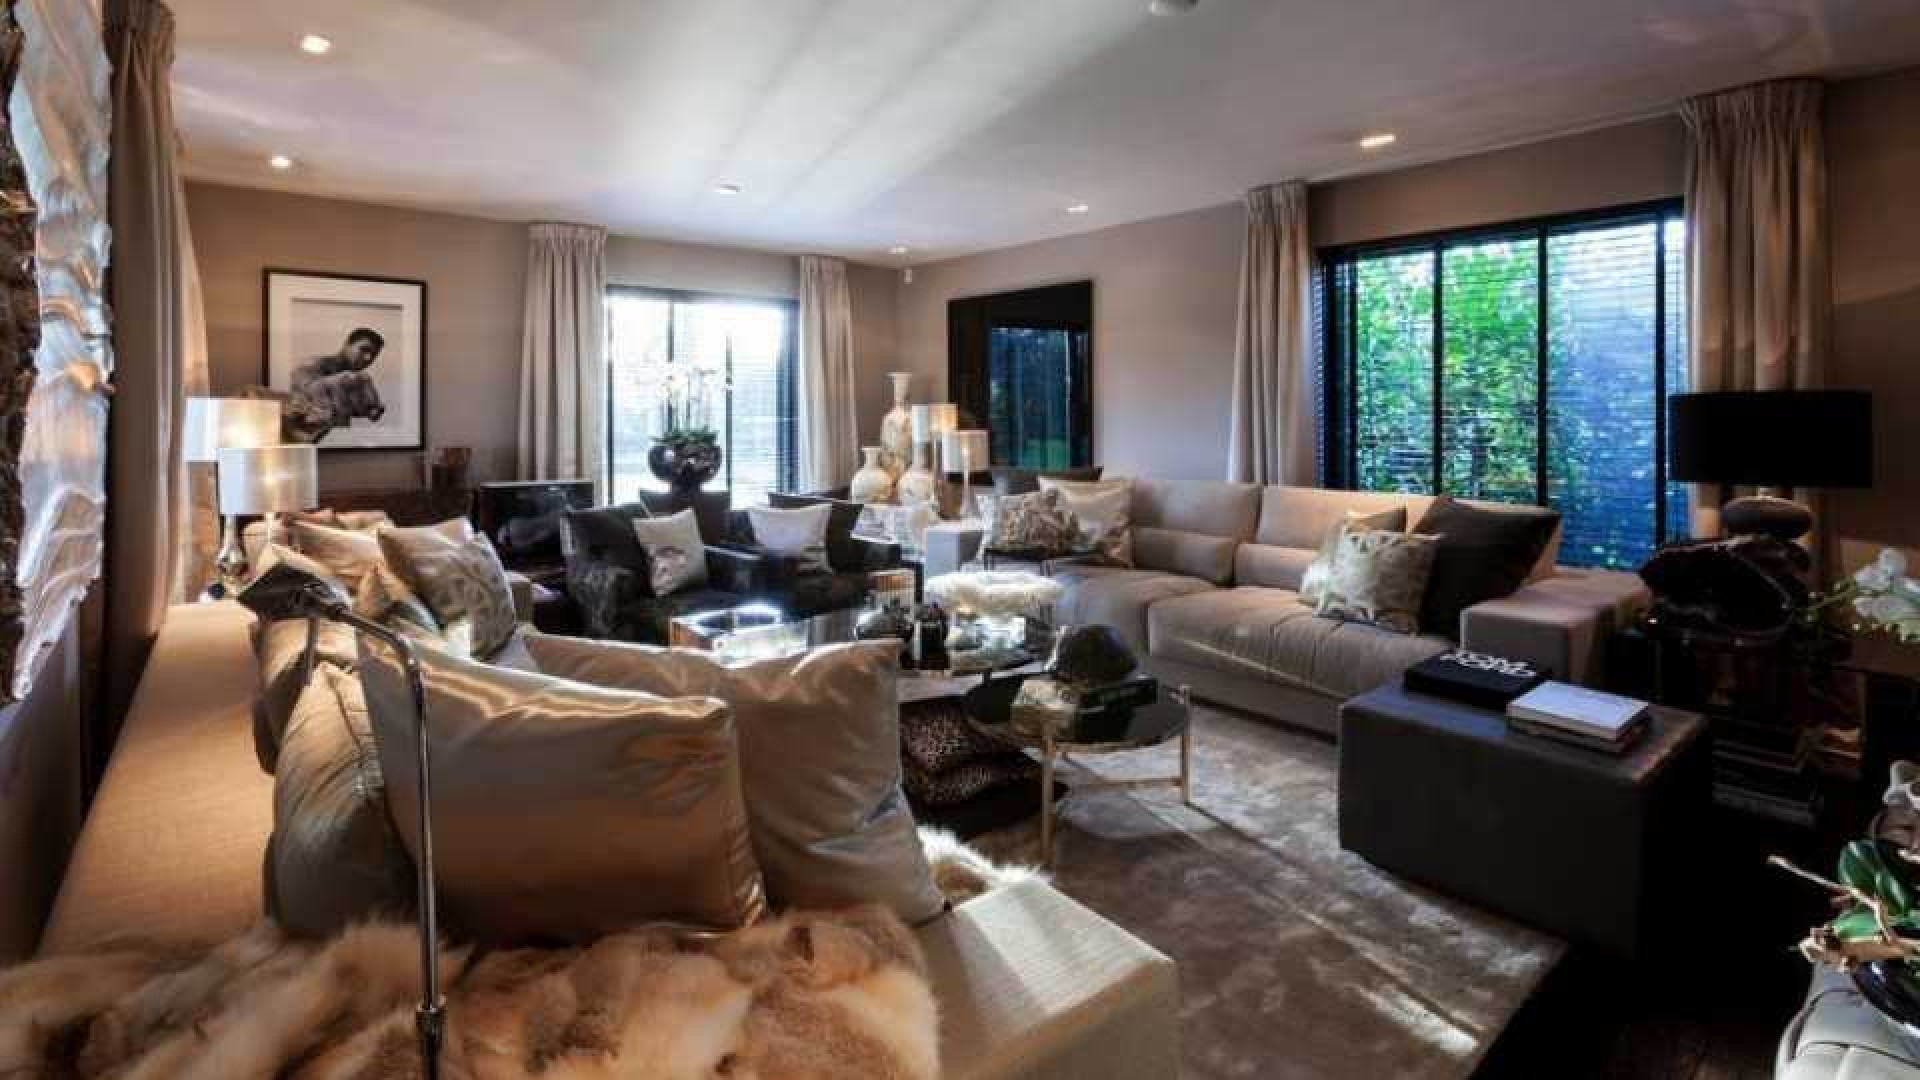 Top interieur stylist Eric Kuster zet zijn eigen droomvilla te koop. Zie foto's 6